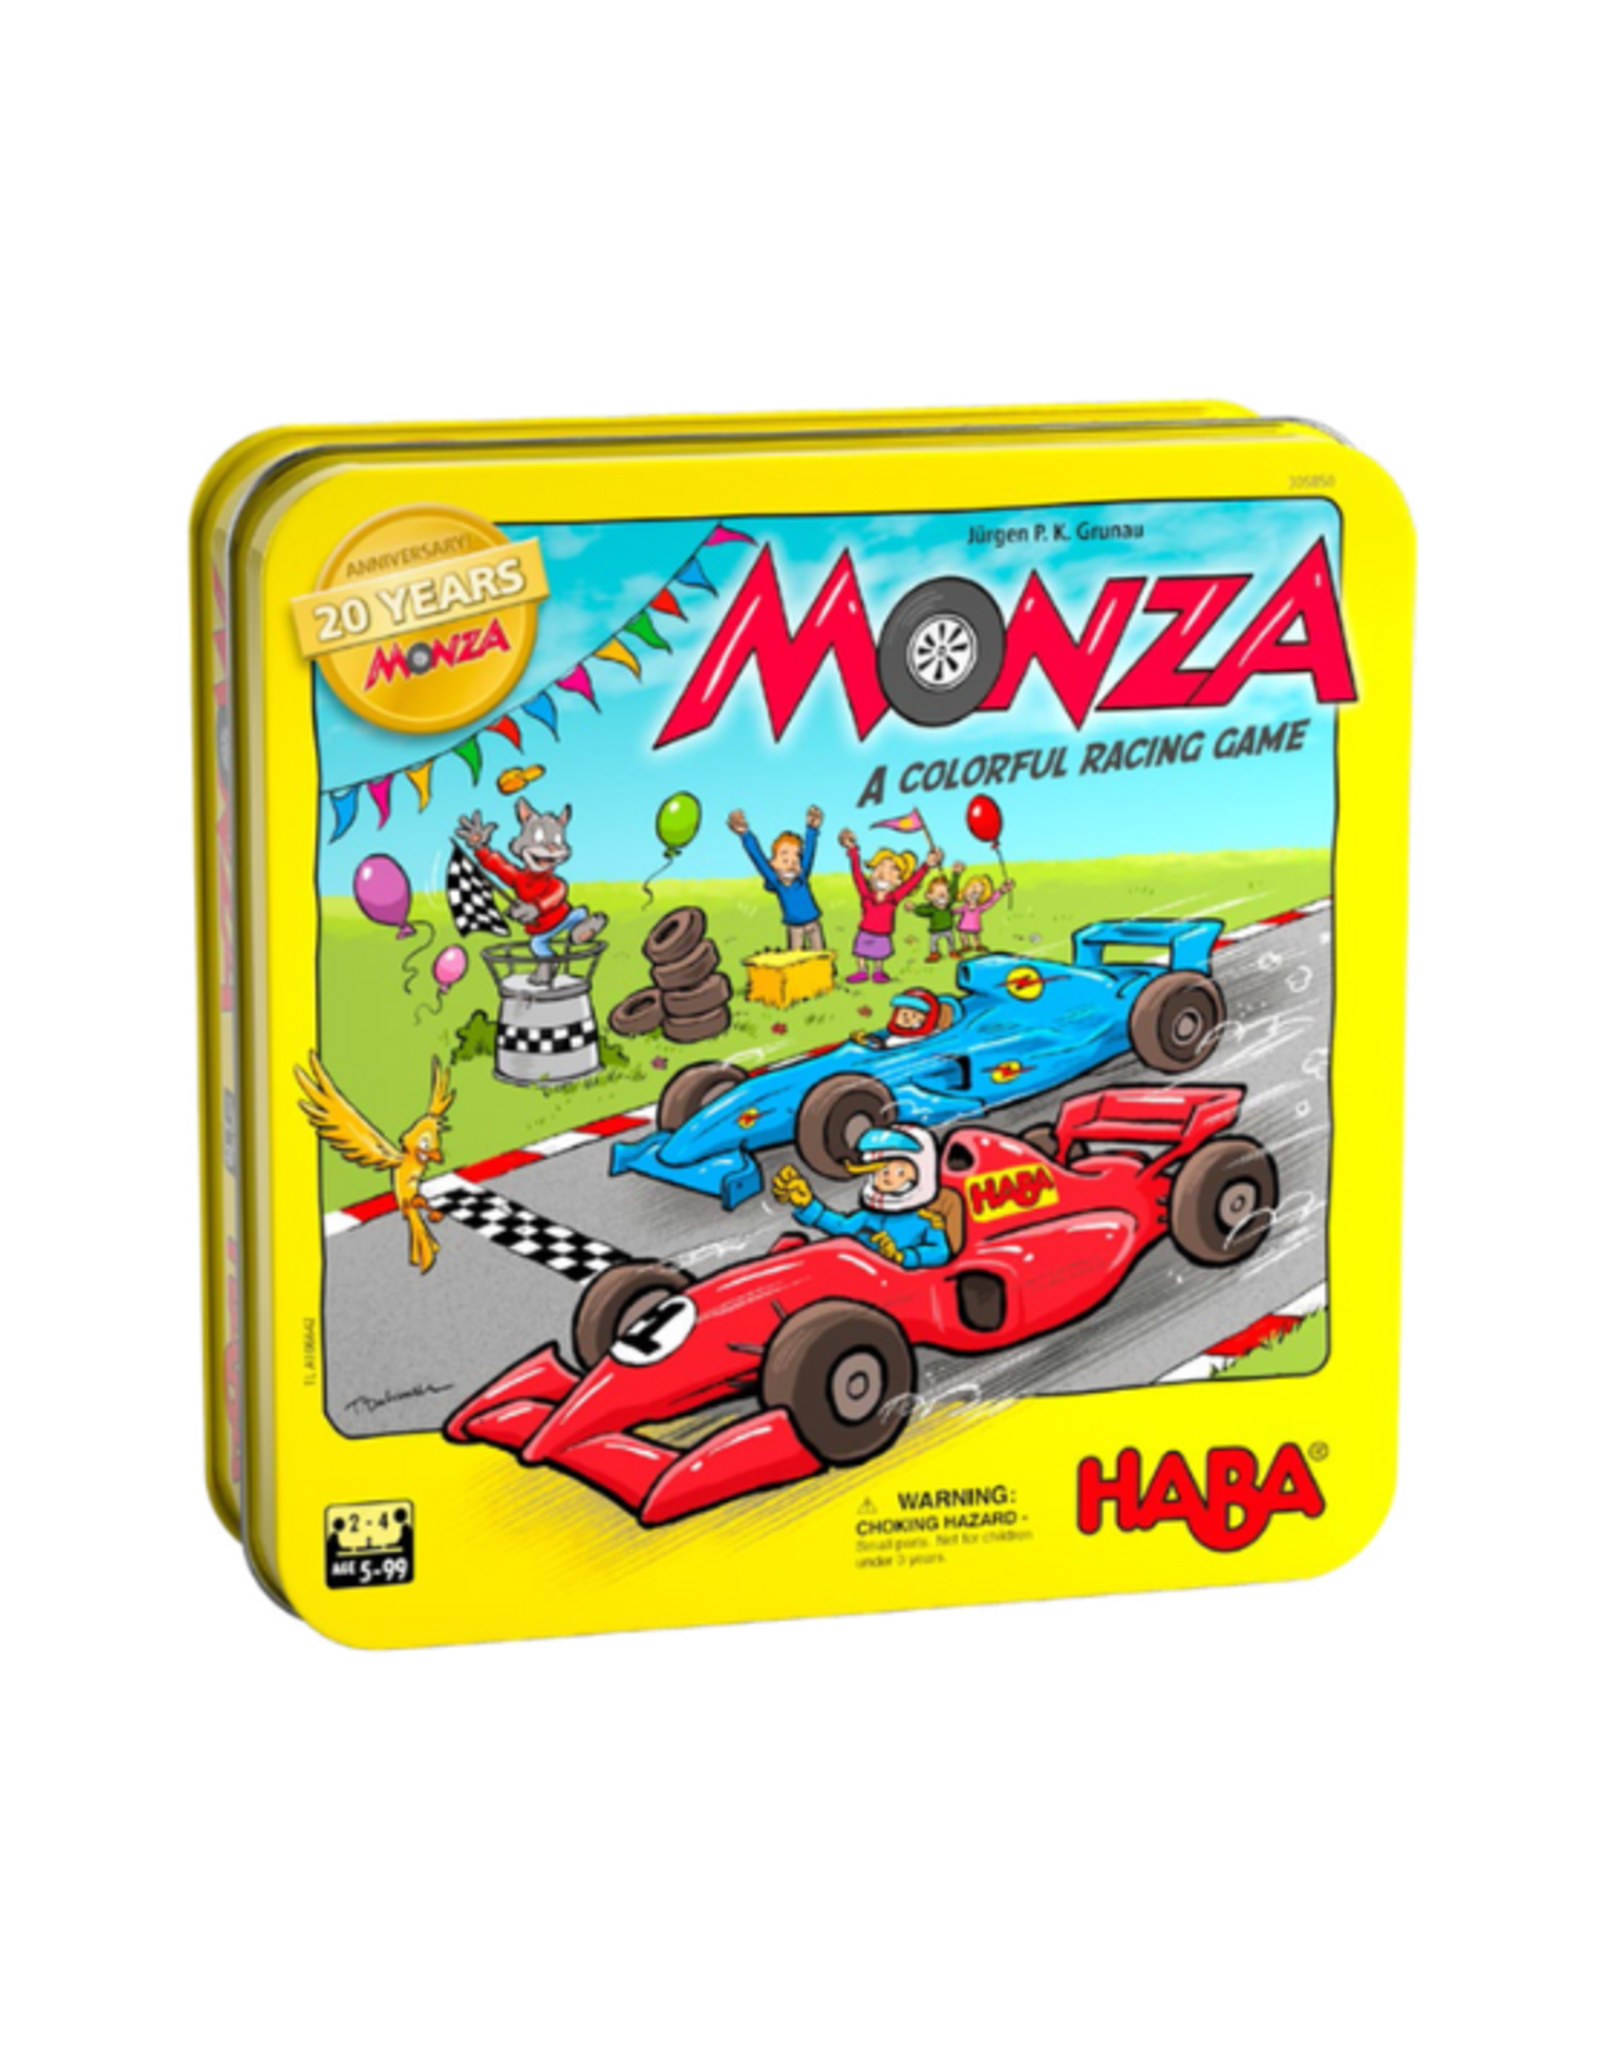 Haba Haba - Monza 20th Anniversary